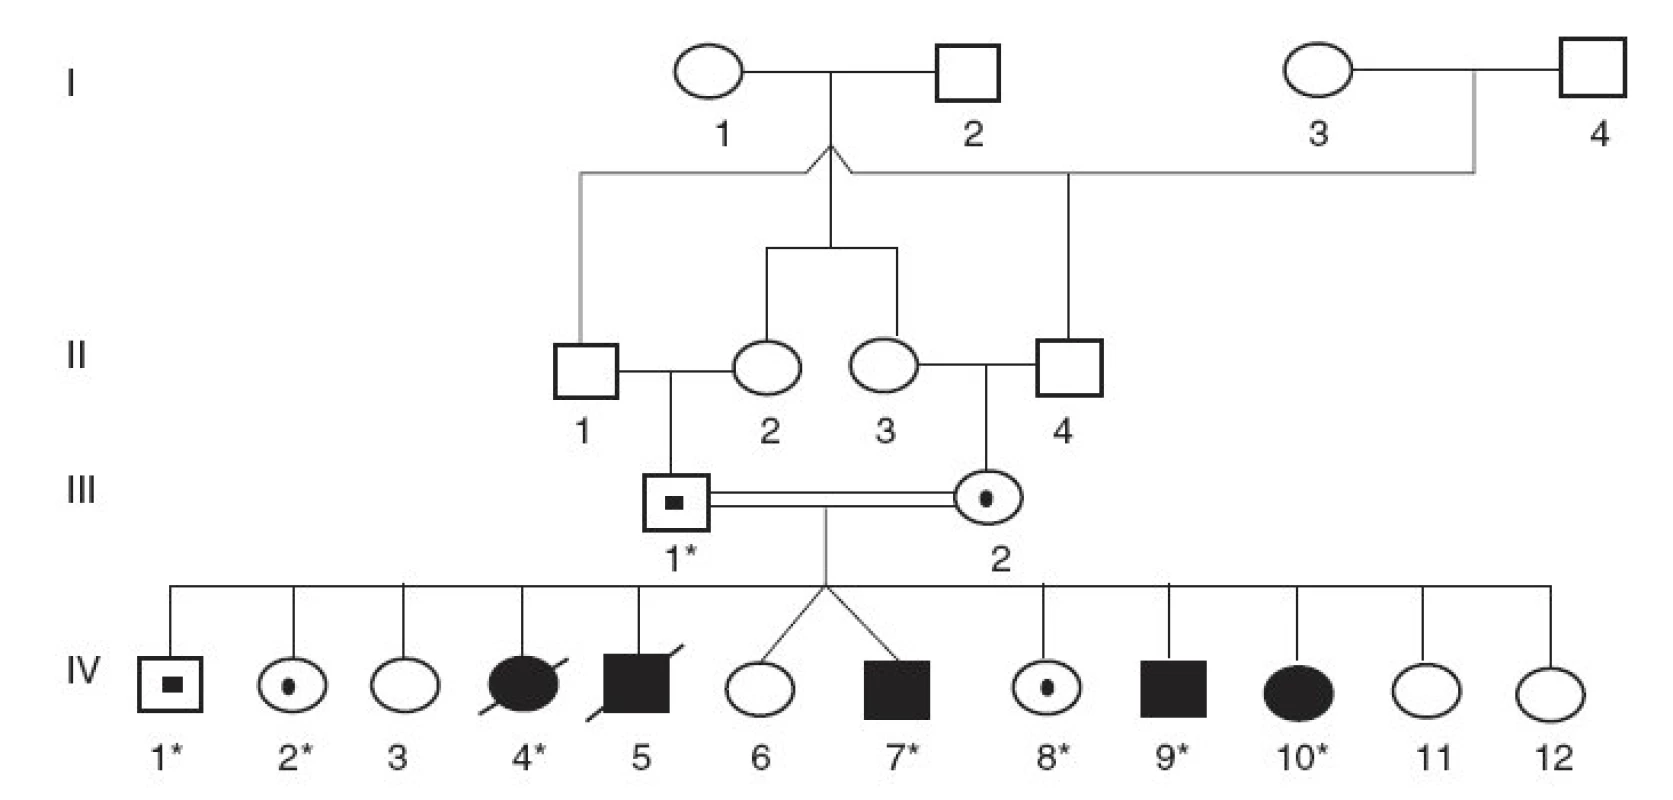 Rodokmeň rómskej rodiny s Criglerovým-Najjarovým syndrómom typu I. (* označuje členov rodiny, od ktorých sme získali DNA vzorky)